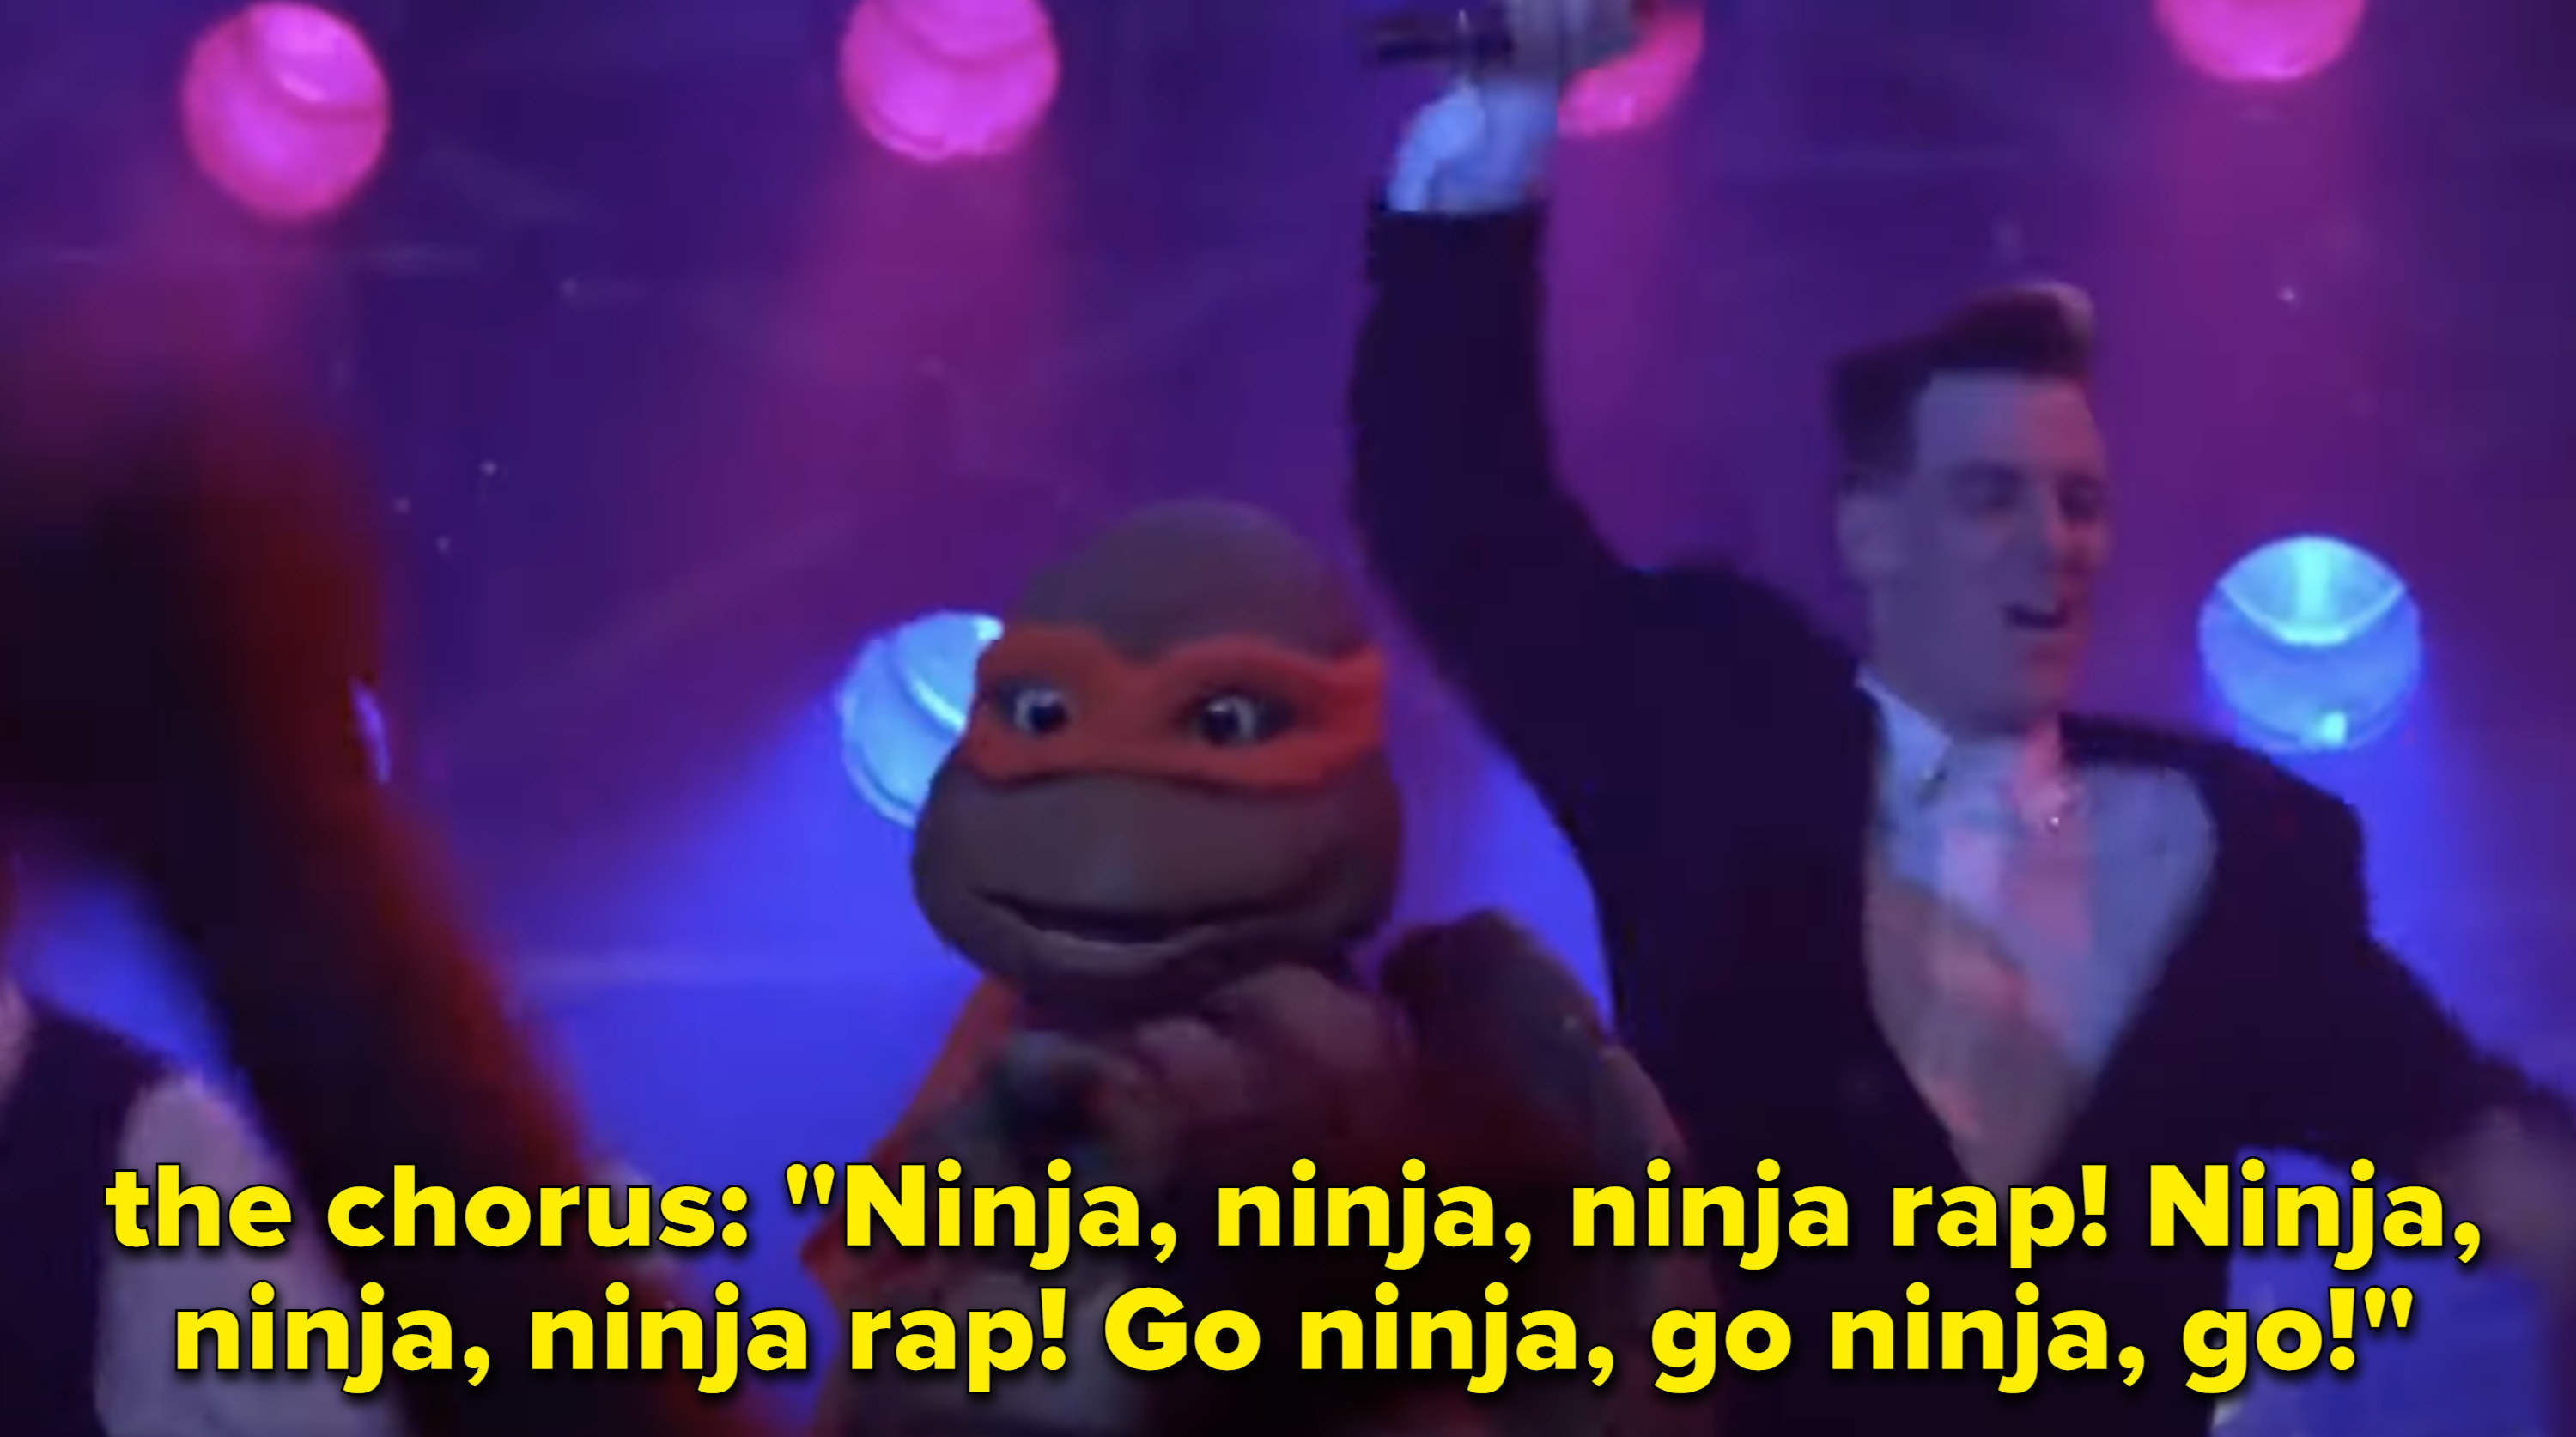 Vanilla Ice and the Teenage Mutant Ninja Turtles performing The Ninja Rap